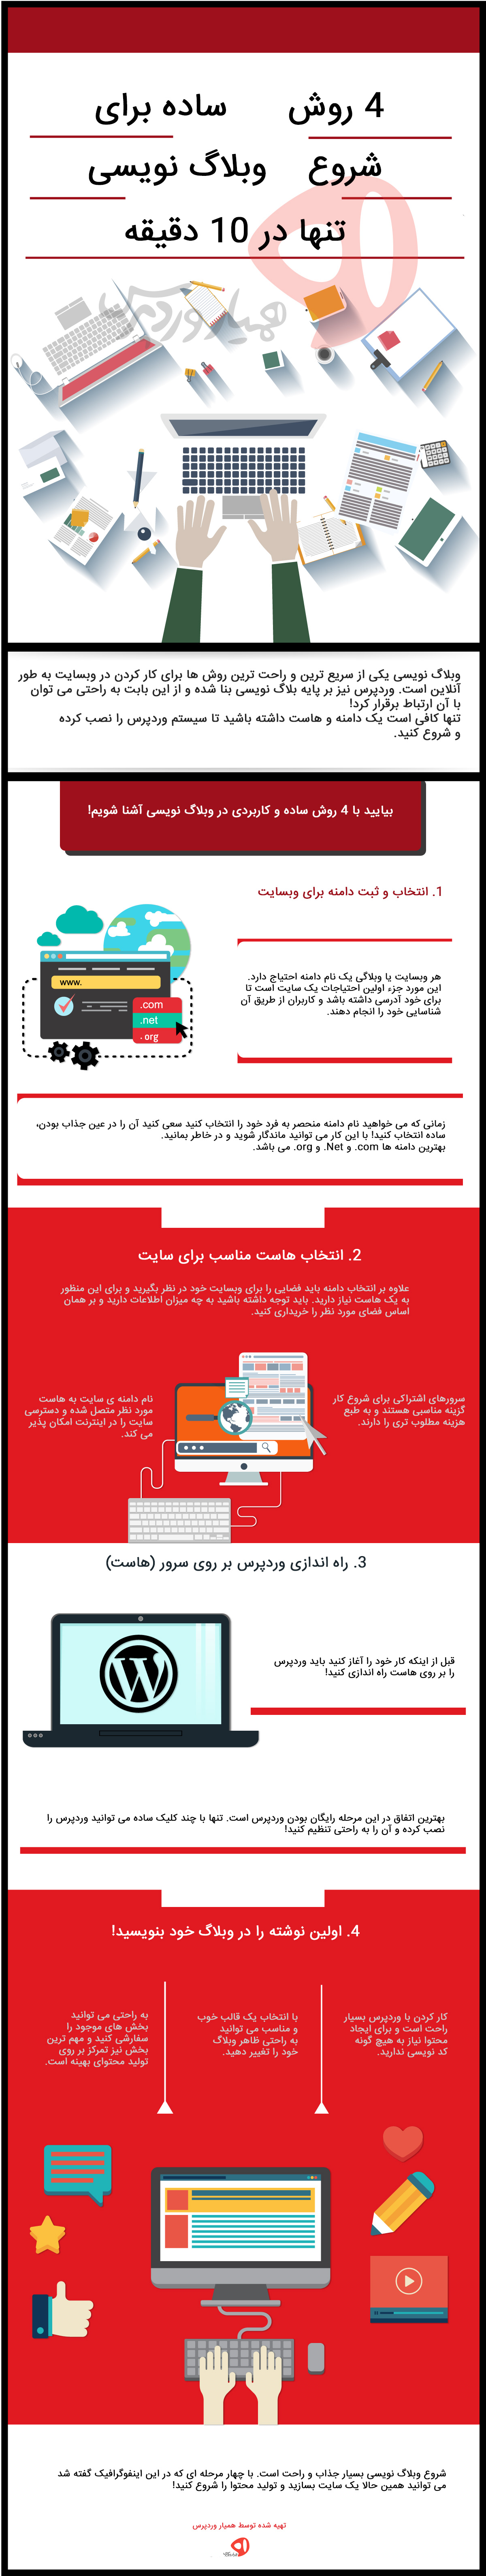 وبلاگ نویسی- شروع وبلاگ نویسی در وردپرس